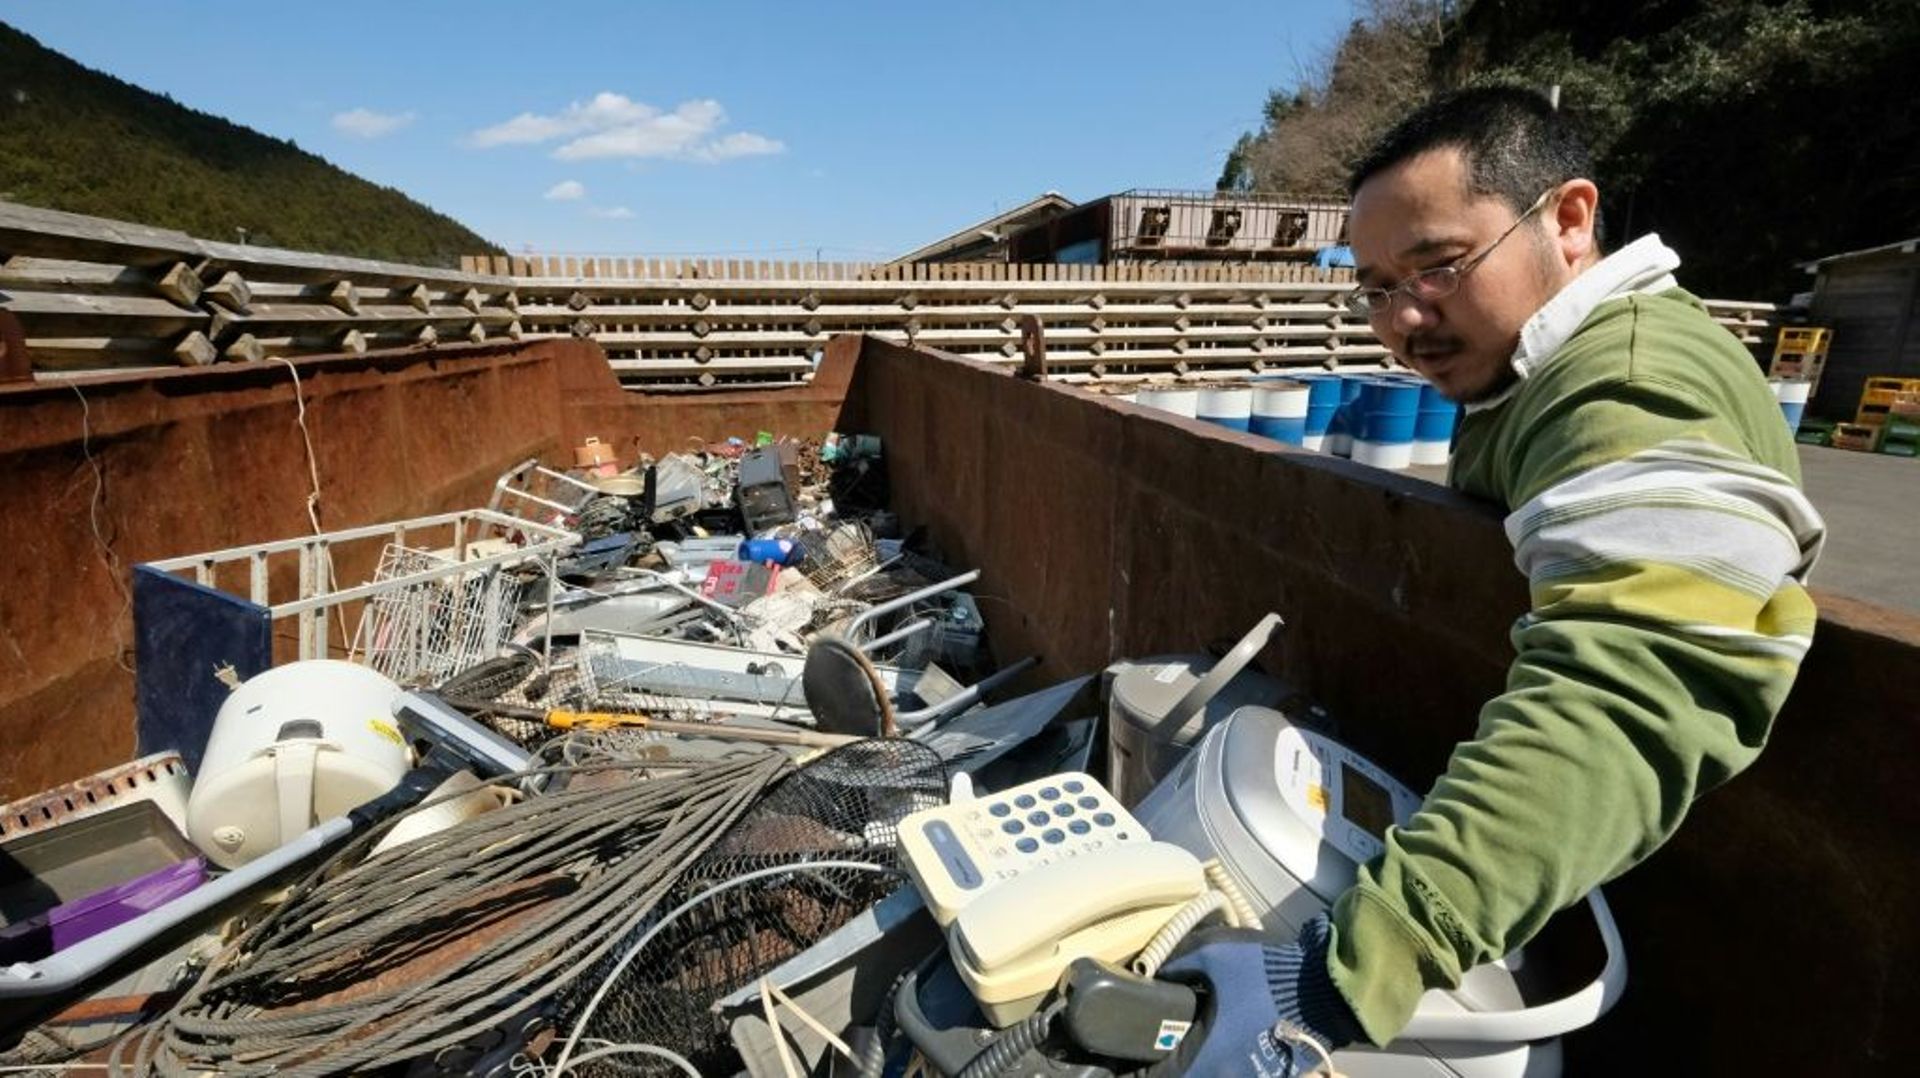 Un habitant de Kamikatsu au Japon apporte à la décharge des objets à recycler, le 14 mars 2019 